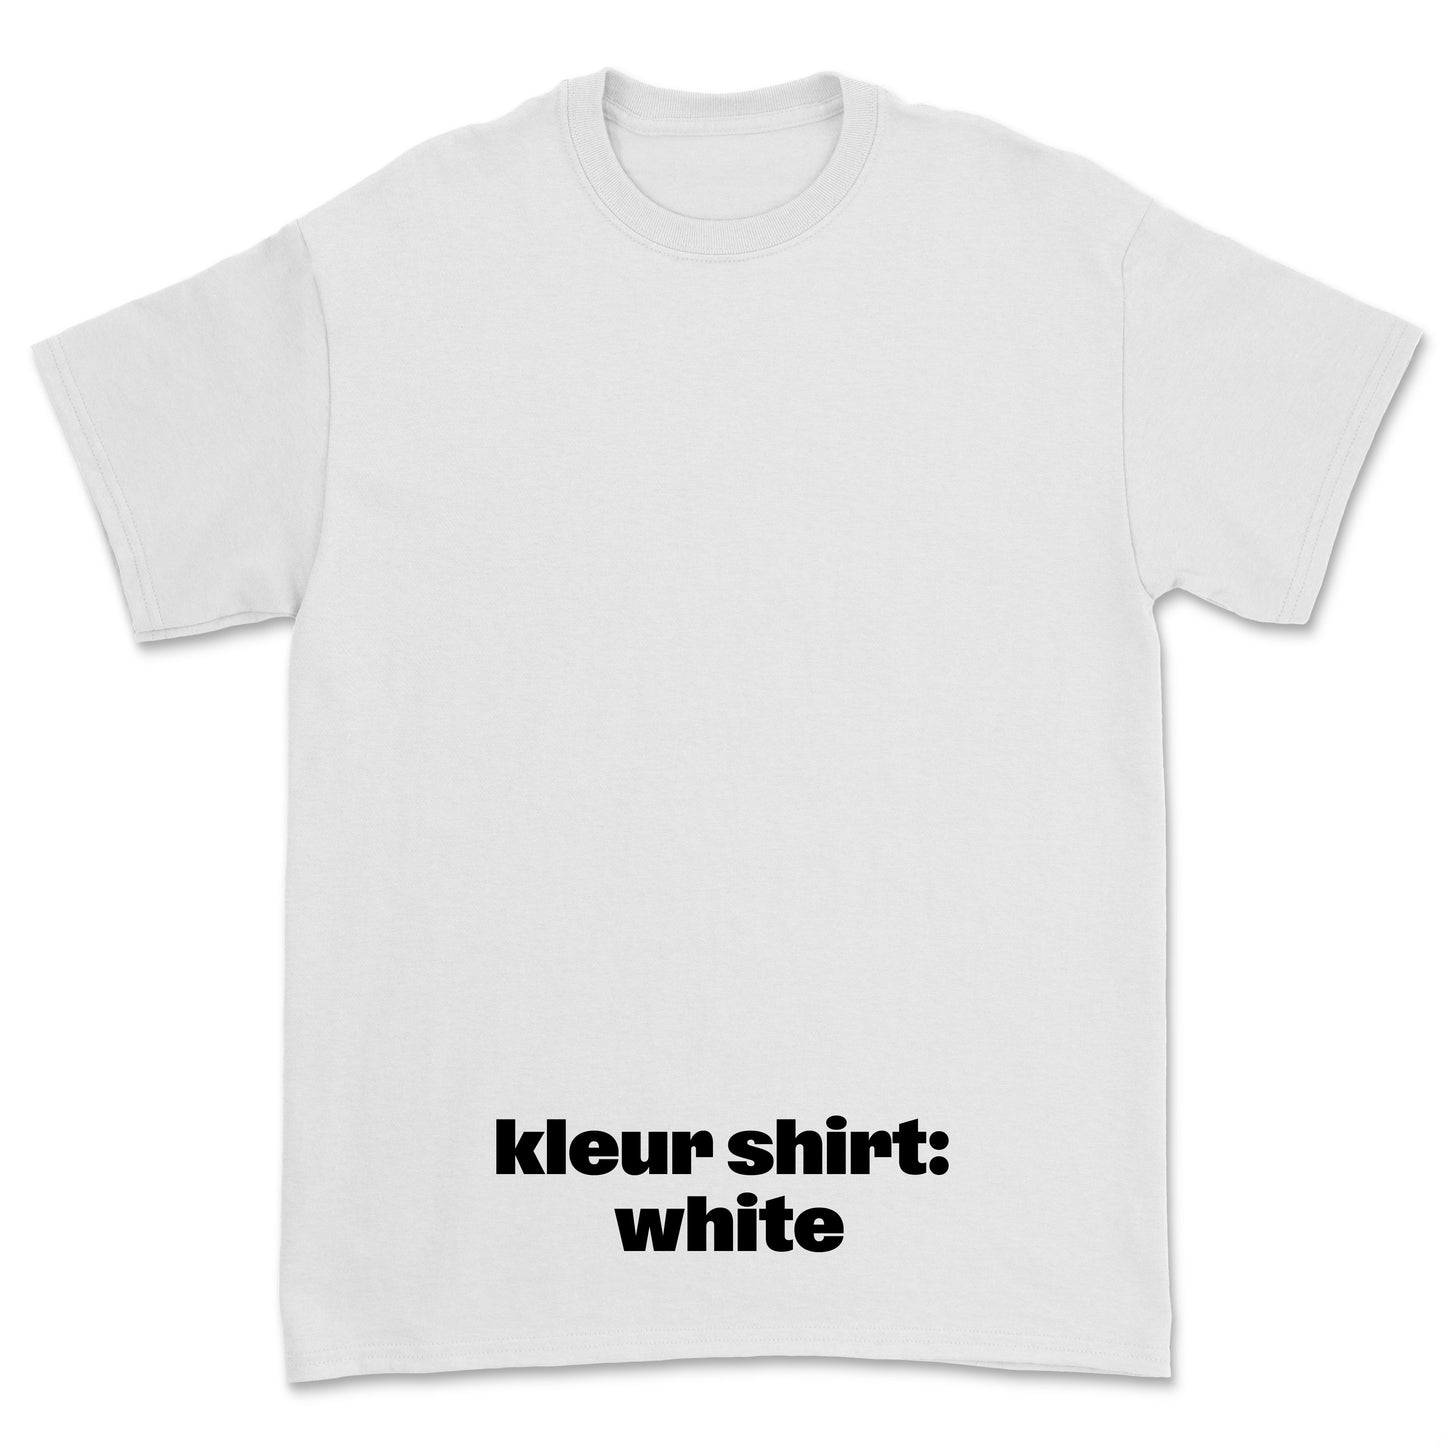 T-shirt 'Left of the Dial' • JOH klein zwart logo borst